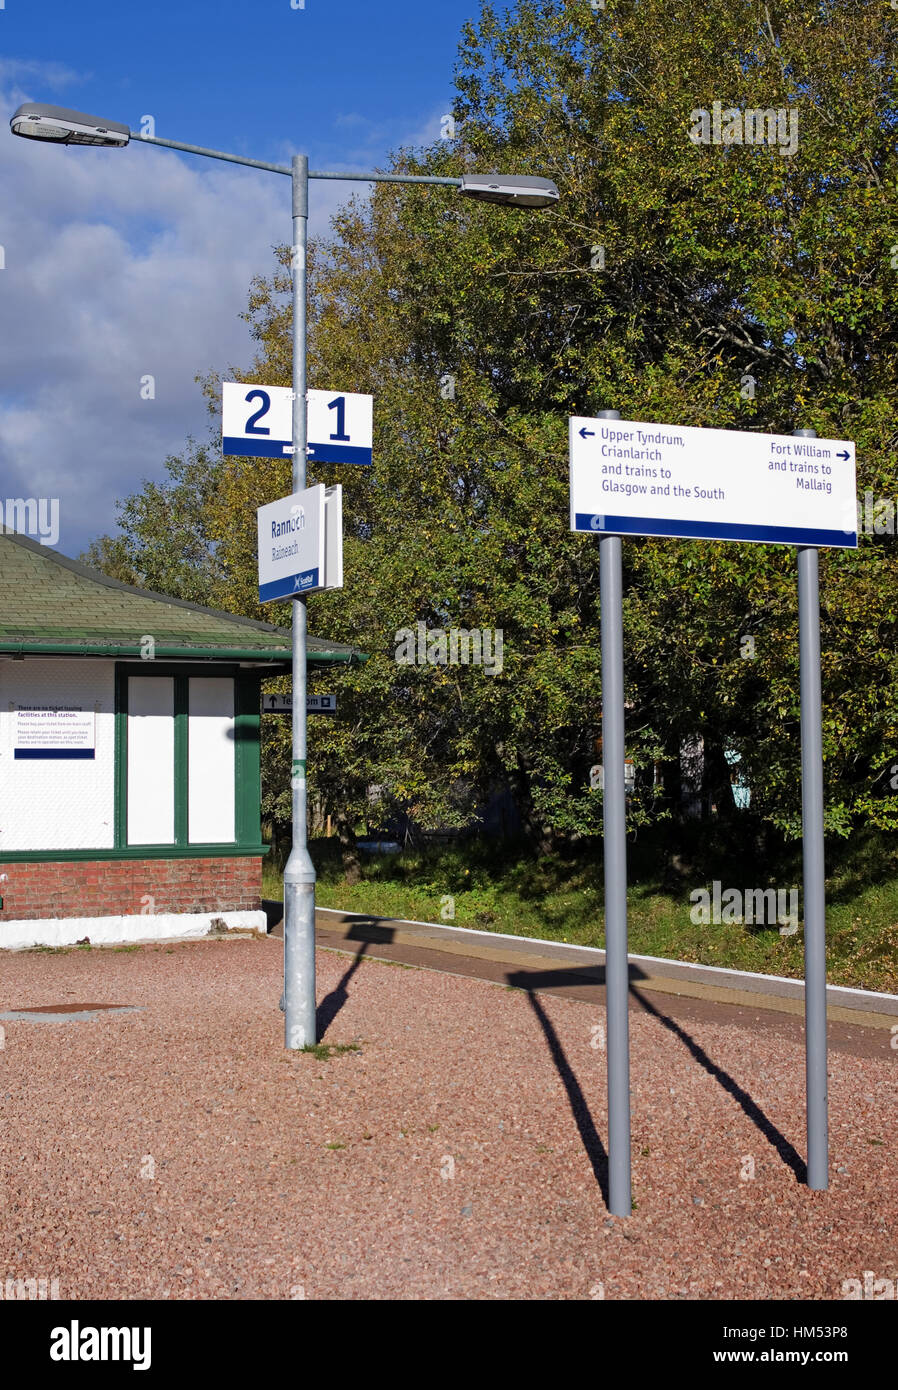 Des panneaux d'information indiquant les numéros de plate-forme et le train destinations, sur la plate-forme à Rannoch Station, Perthshire, Écosse, Scotland UK Banque D'Images